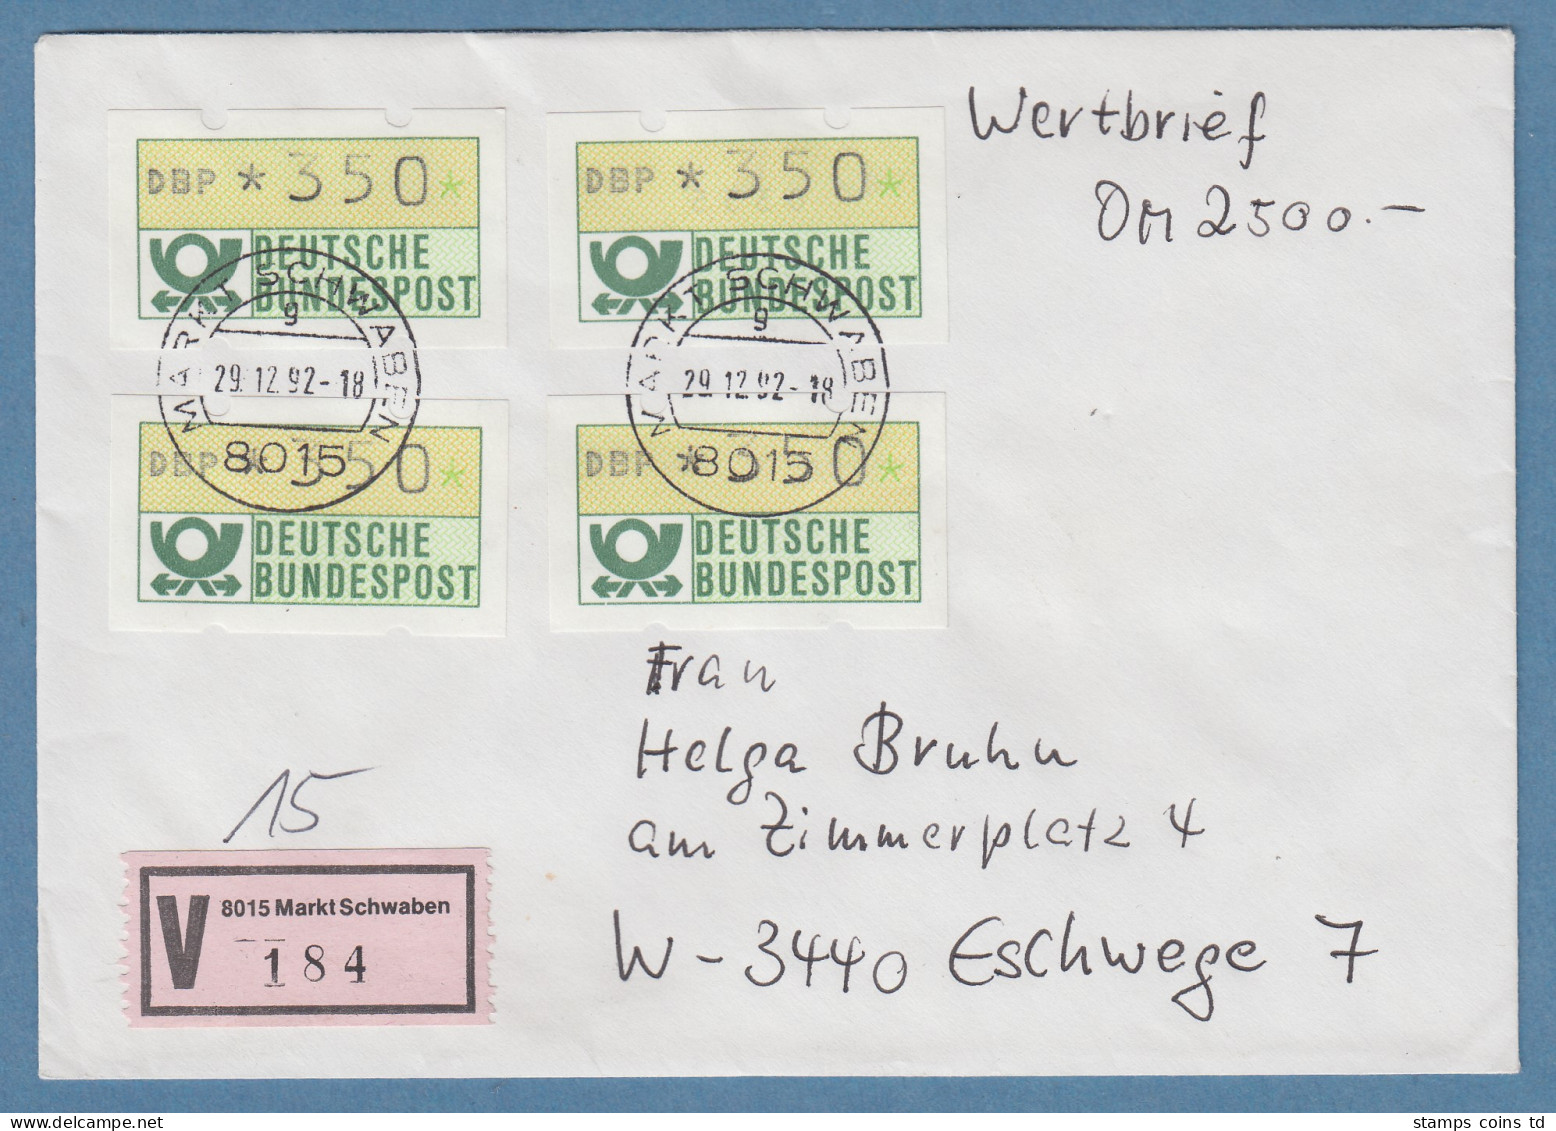 NAGLER-ATM Mi-Nr 1.2 Wert 350Pfg 4x Als MEF Auf Wertbrief über 2500,- DM, 1992 - Vignette [ATM]